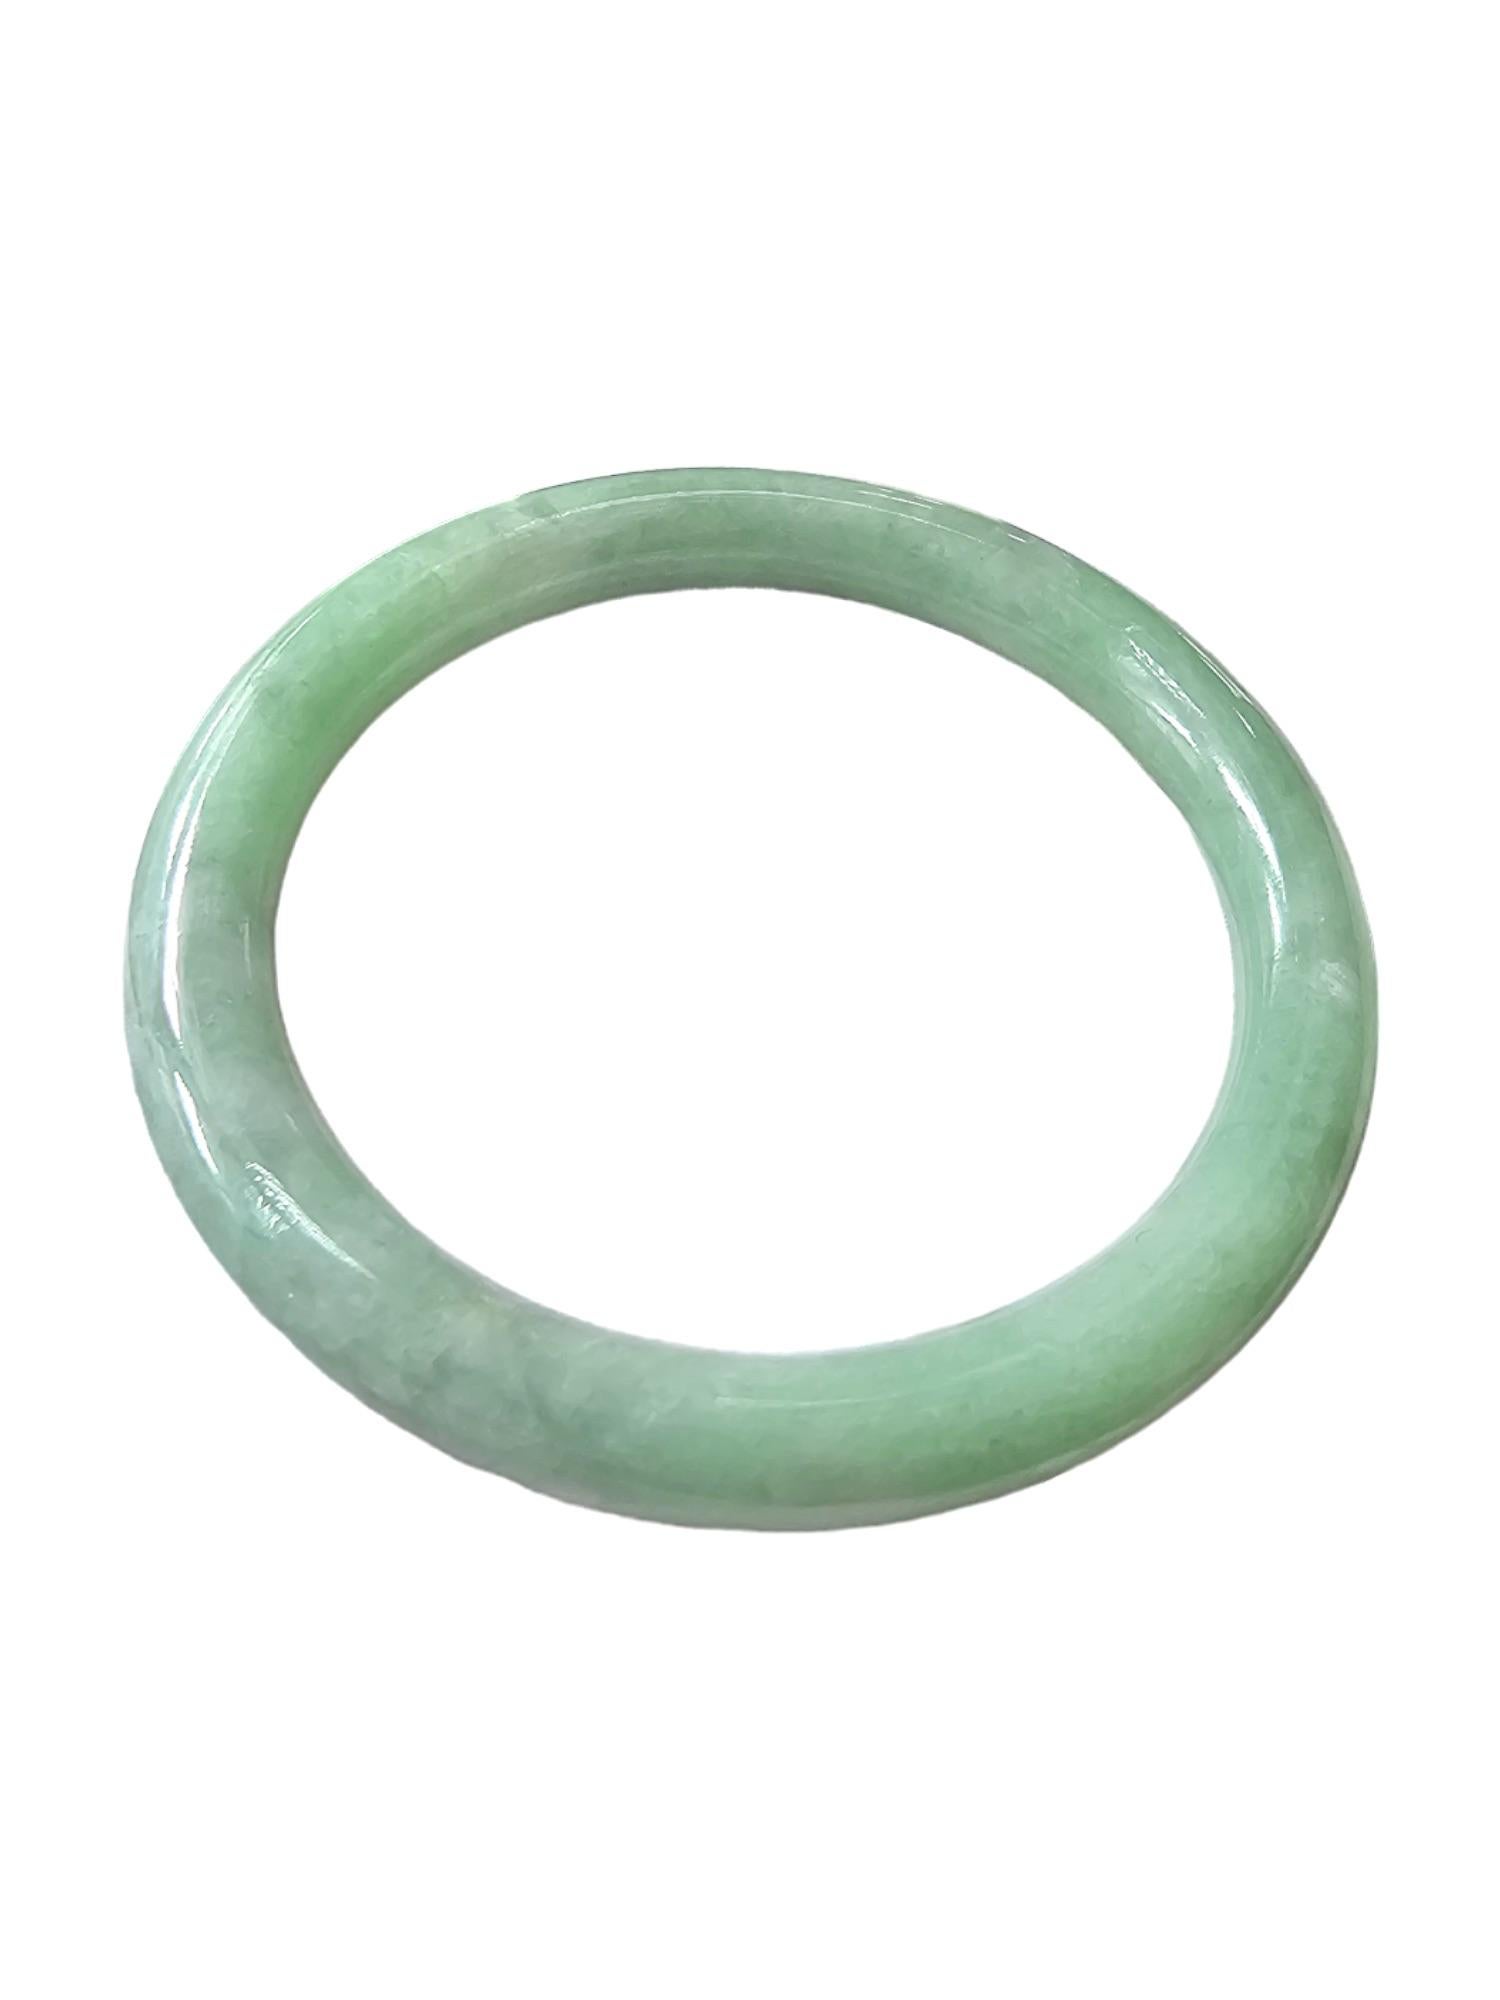 Women's or Men's Earth's Burmese A-Jade Bangle Bracelet Green Jadeite 08809 For Sale